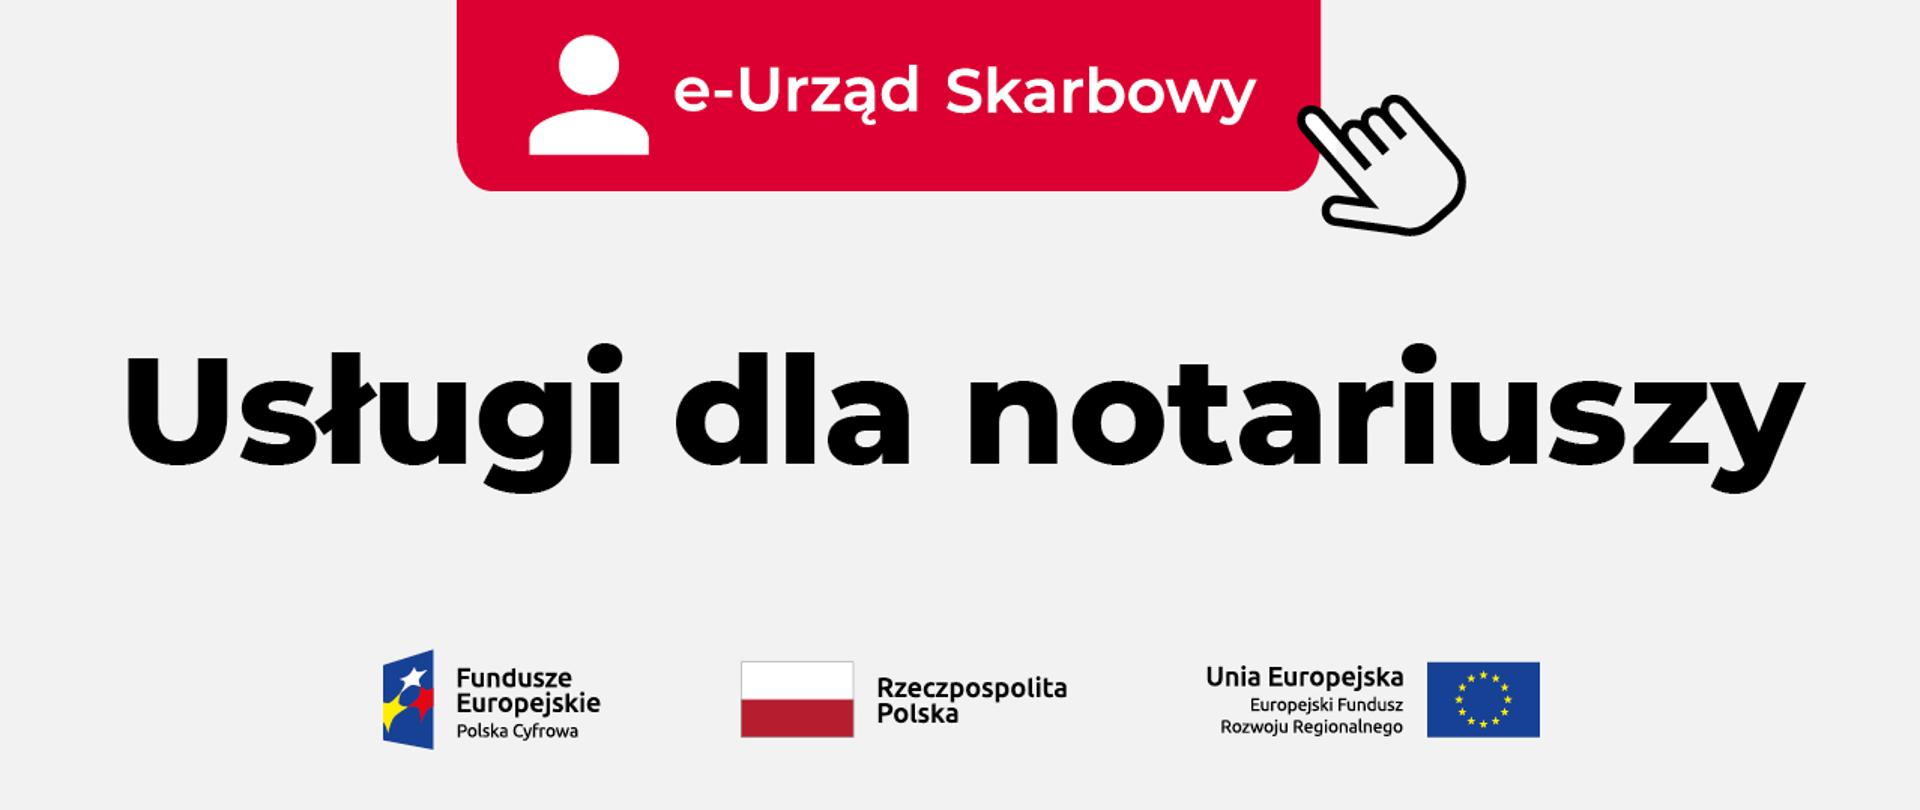 Napisy e-Urząd Skarbowy, Usługi dla notariuszy. Symbol Fundusze Europejskie Polska Cyfrowa, flaga Rzeczypospolitej Polskiej, Unii Europejskiej.